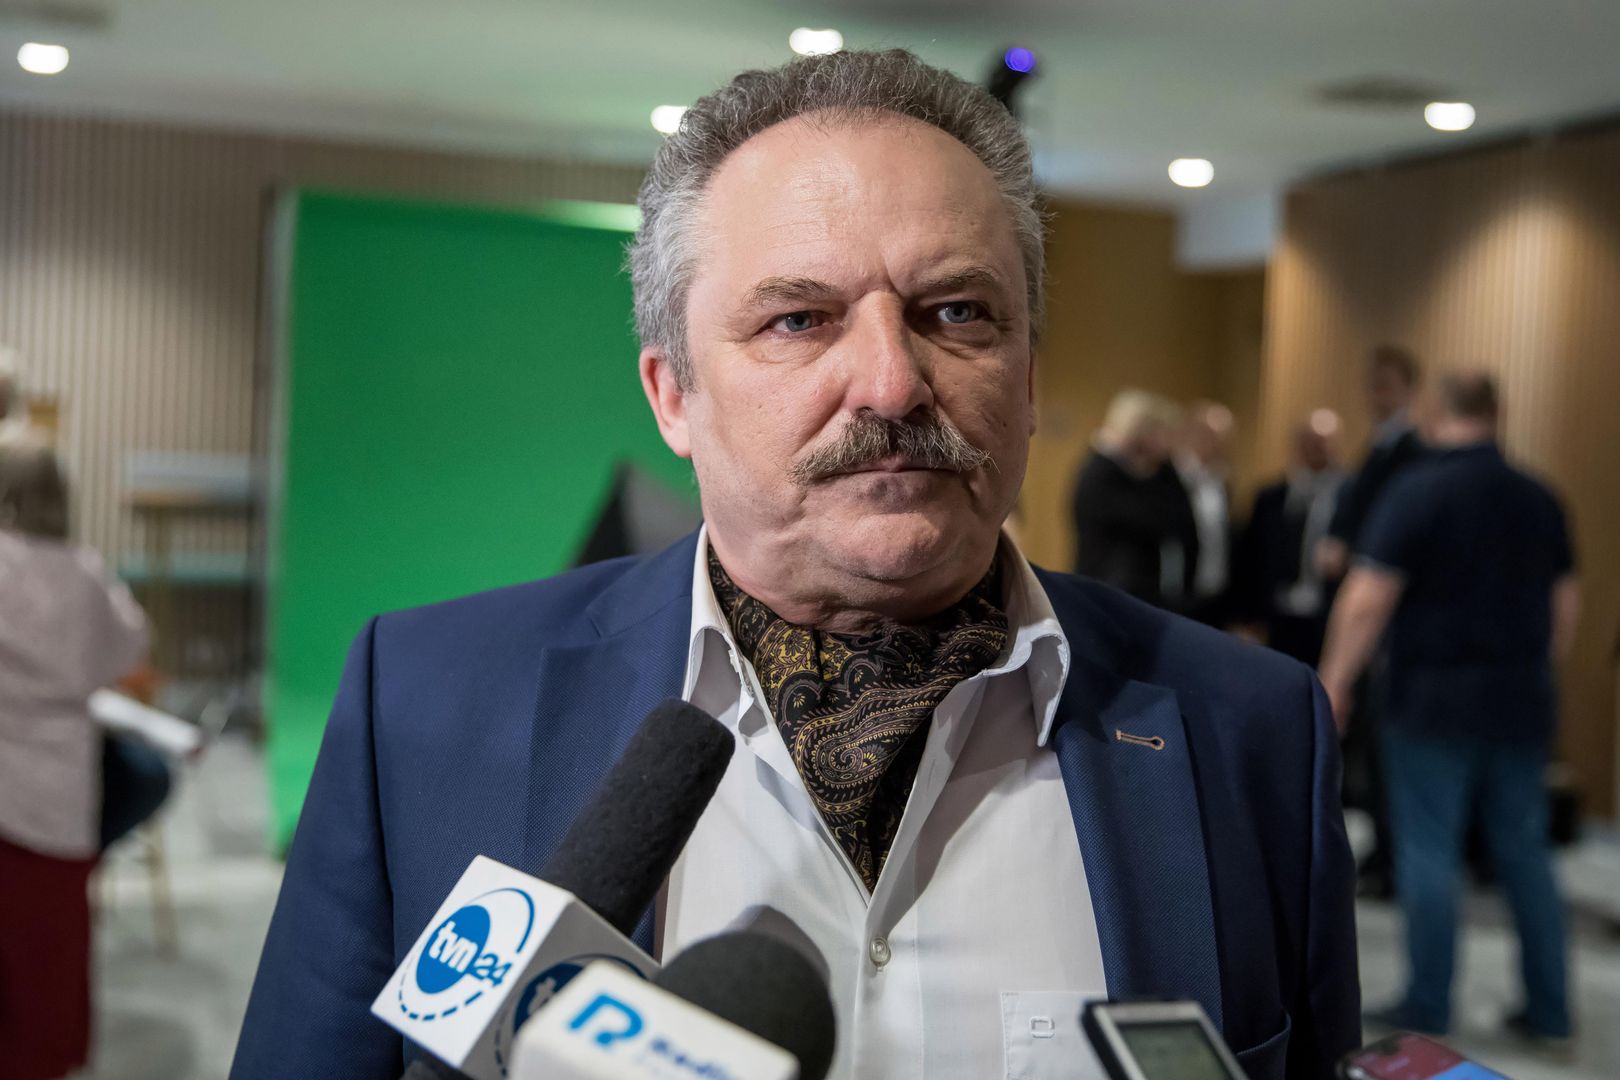 Marek Jakubiak krytycznie wypowiedział się o wyniku wyborczym Pawła Kukiza